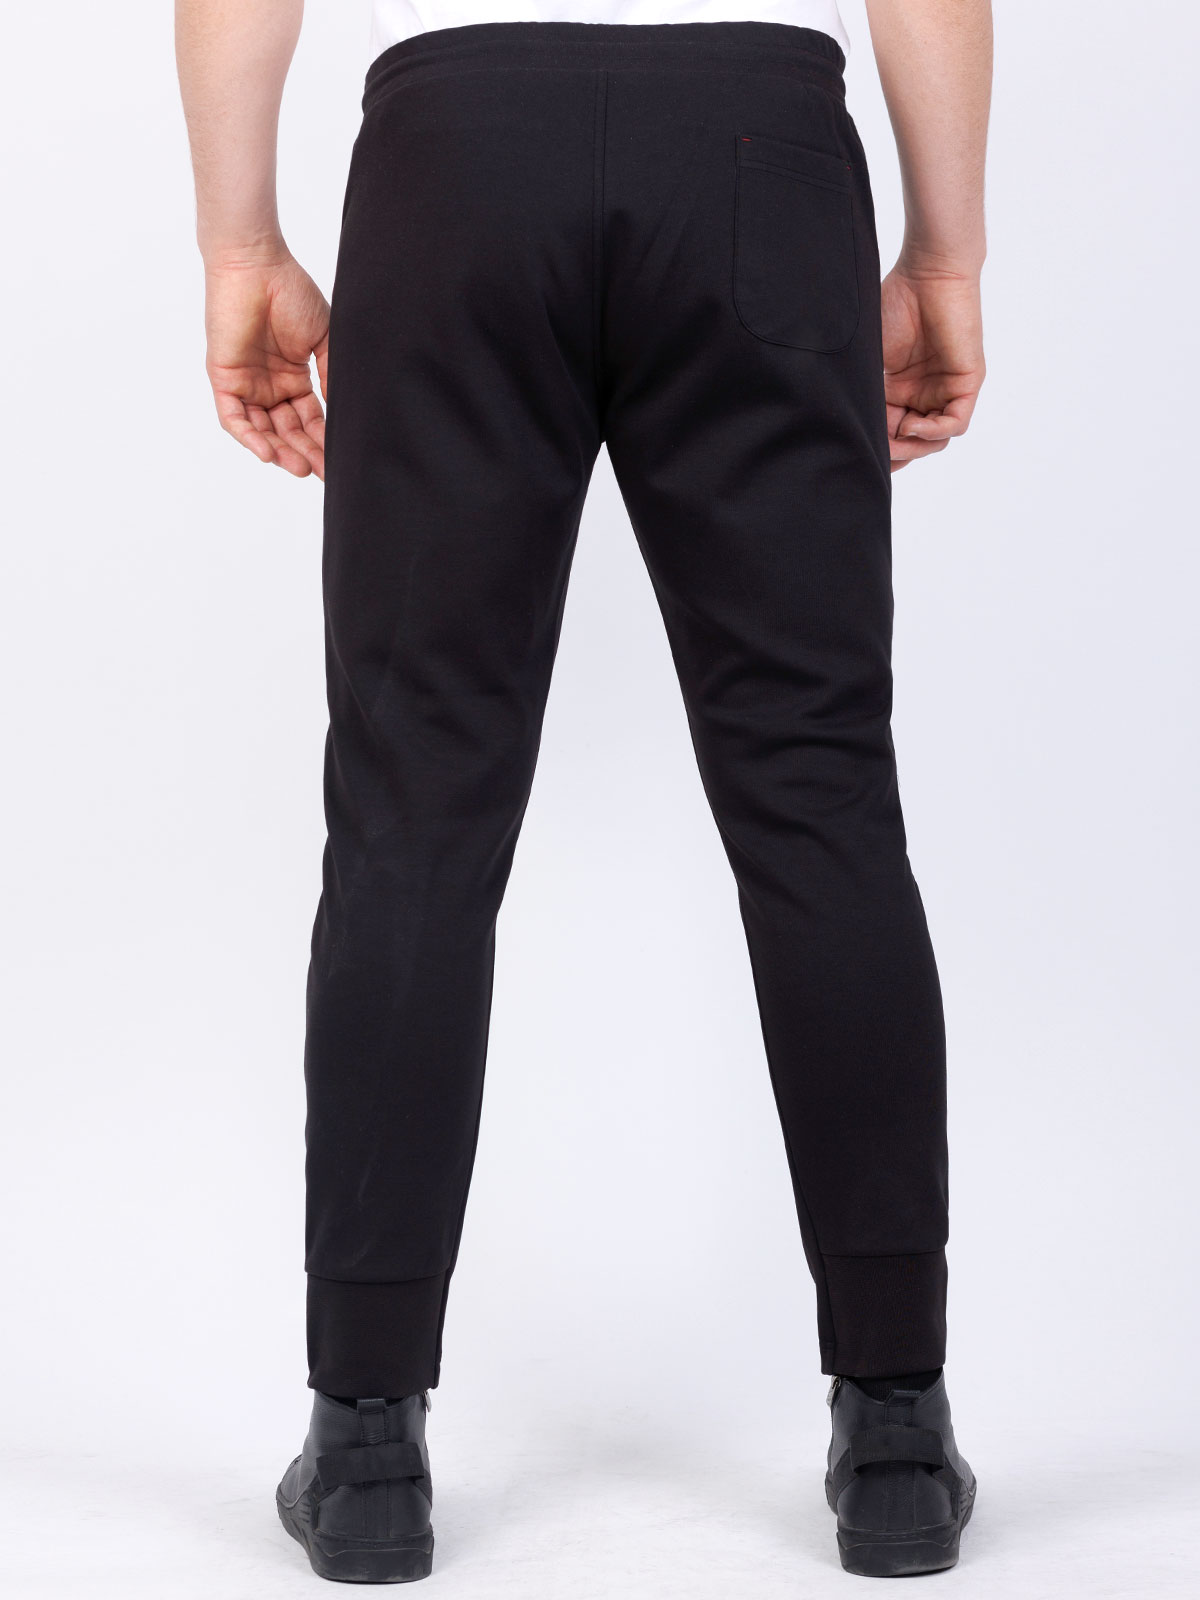 Pantalon sport pentru bărbați în negru - 29001 € 41.62 img3